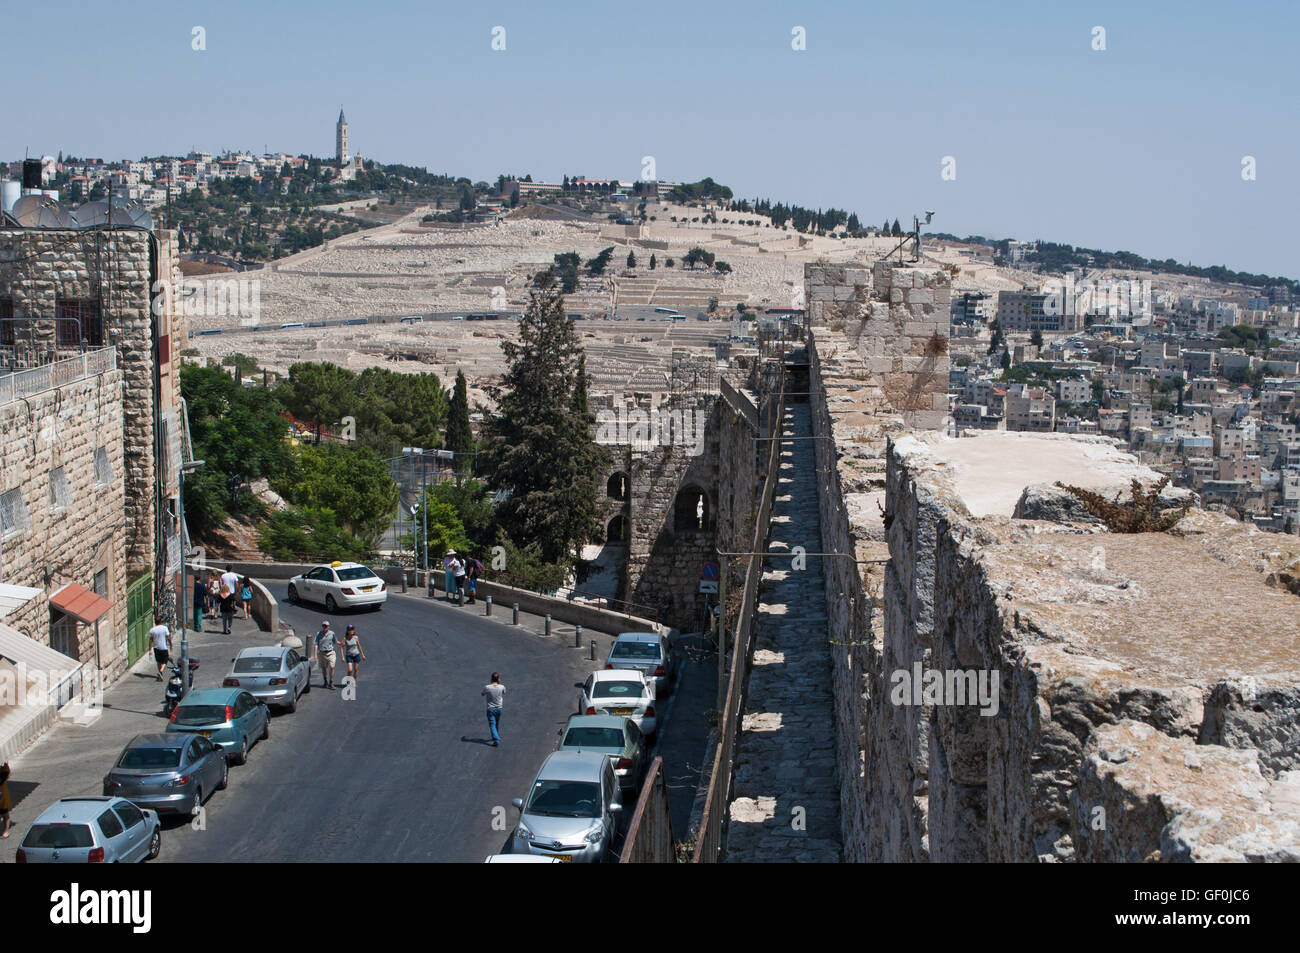 Gerusalemme, Israele: il monte degli Ulivi si vede dalle antiche mura della Città Vecchia, una attrazione turistica con le sue escursioni a piedi Foto Stock